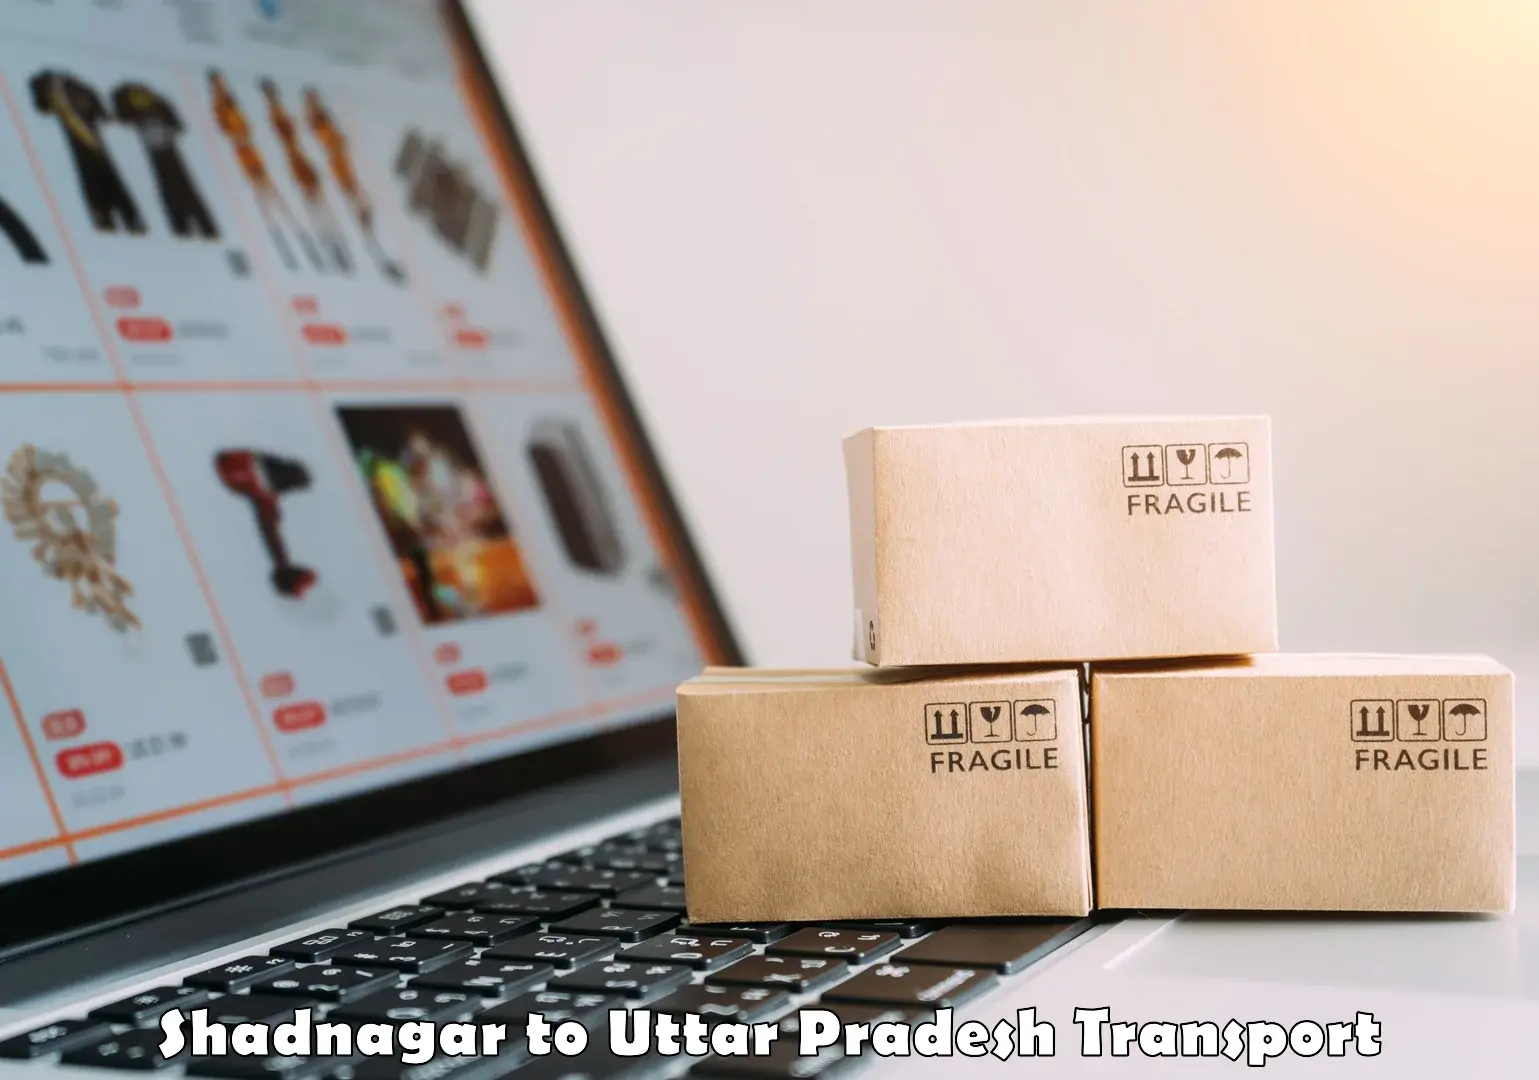 Delivery service Shadnagar to Uttar Pradesh